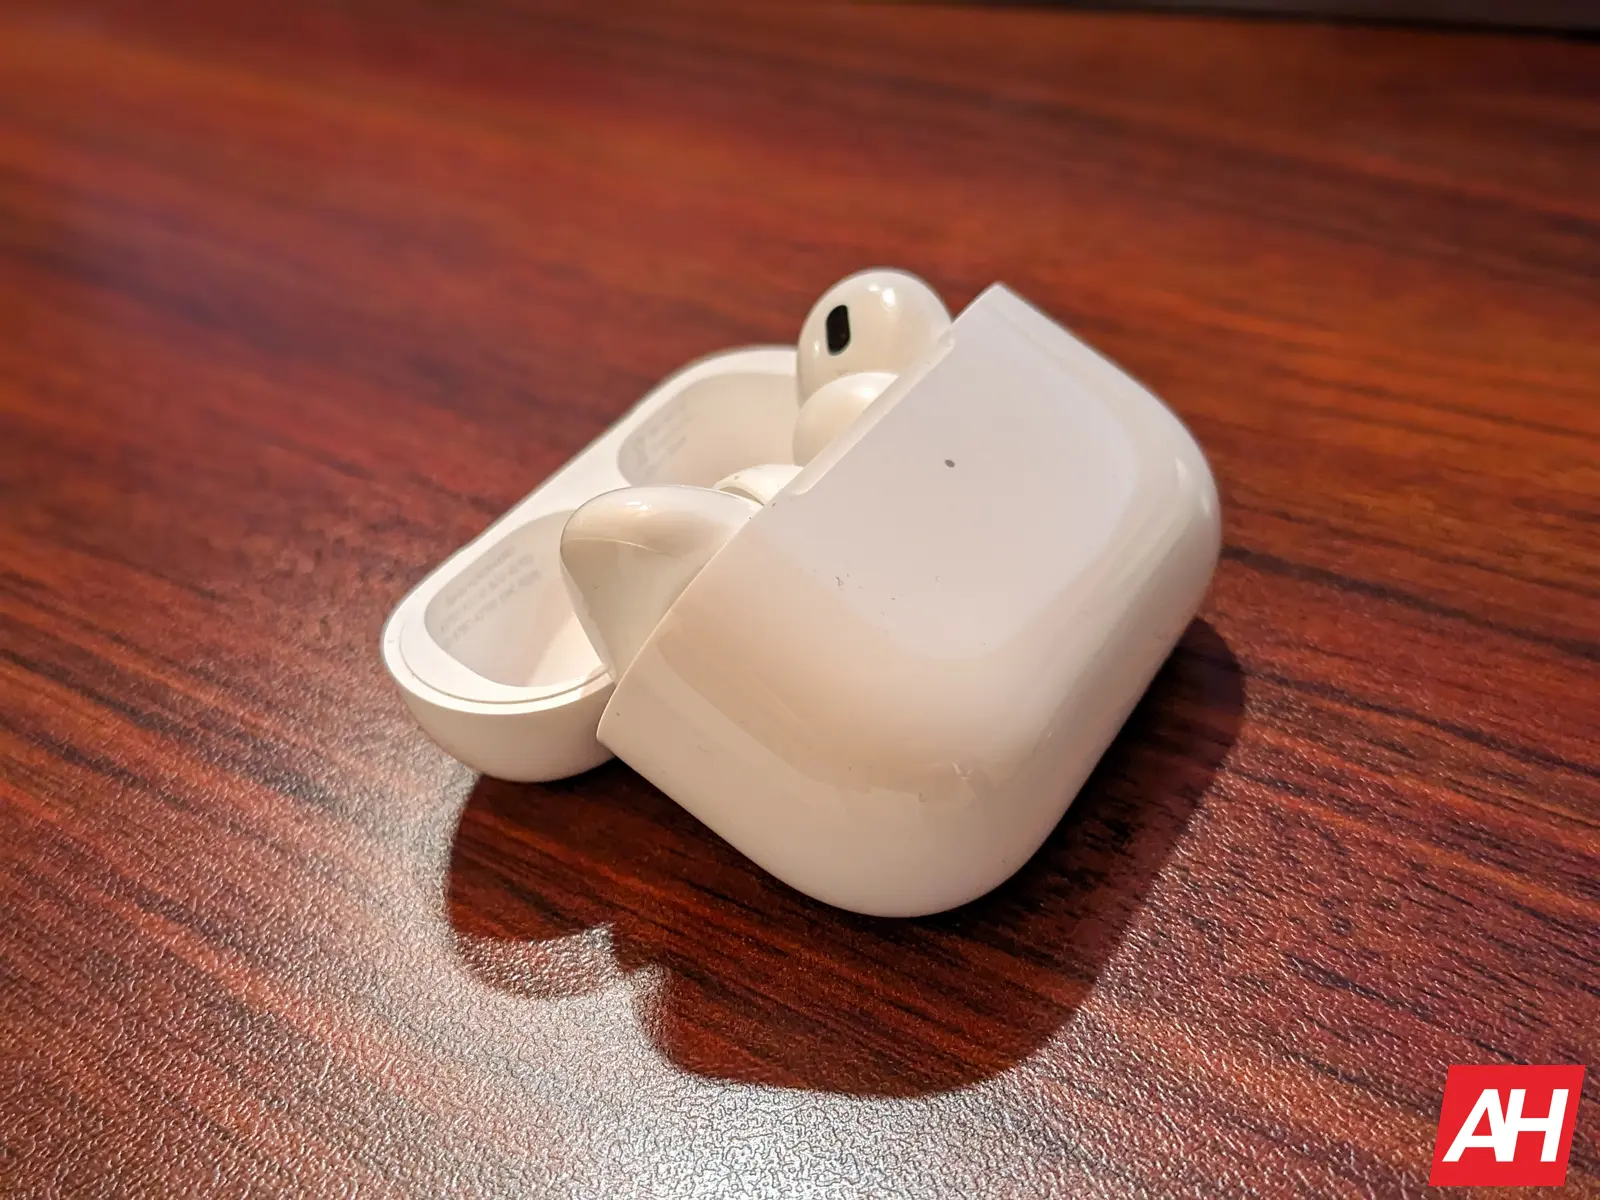 Consigue el nuevo Apple AirPods Pro USB-C por solo $ 189